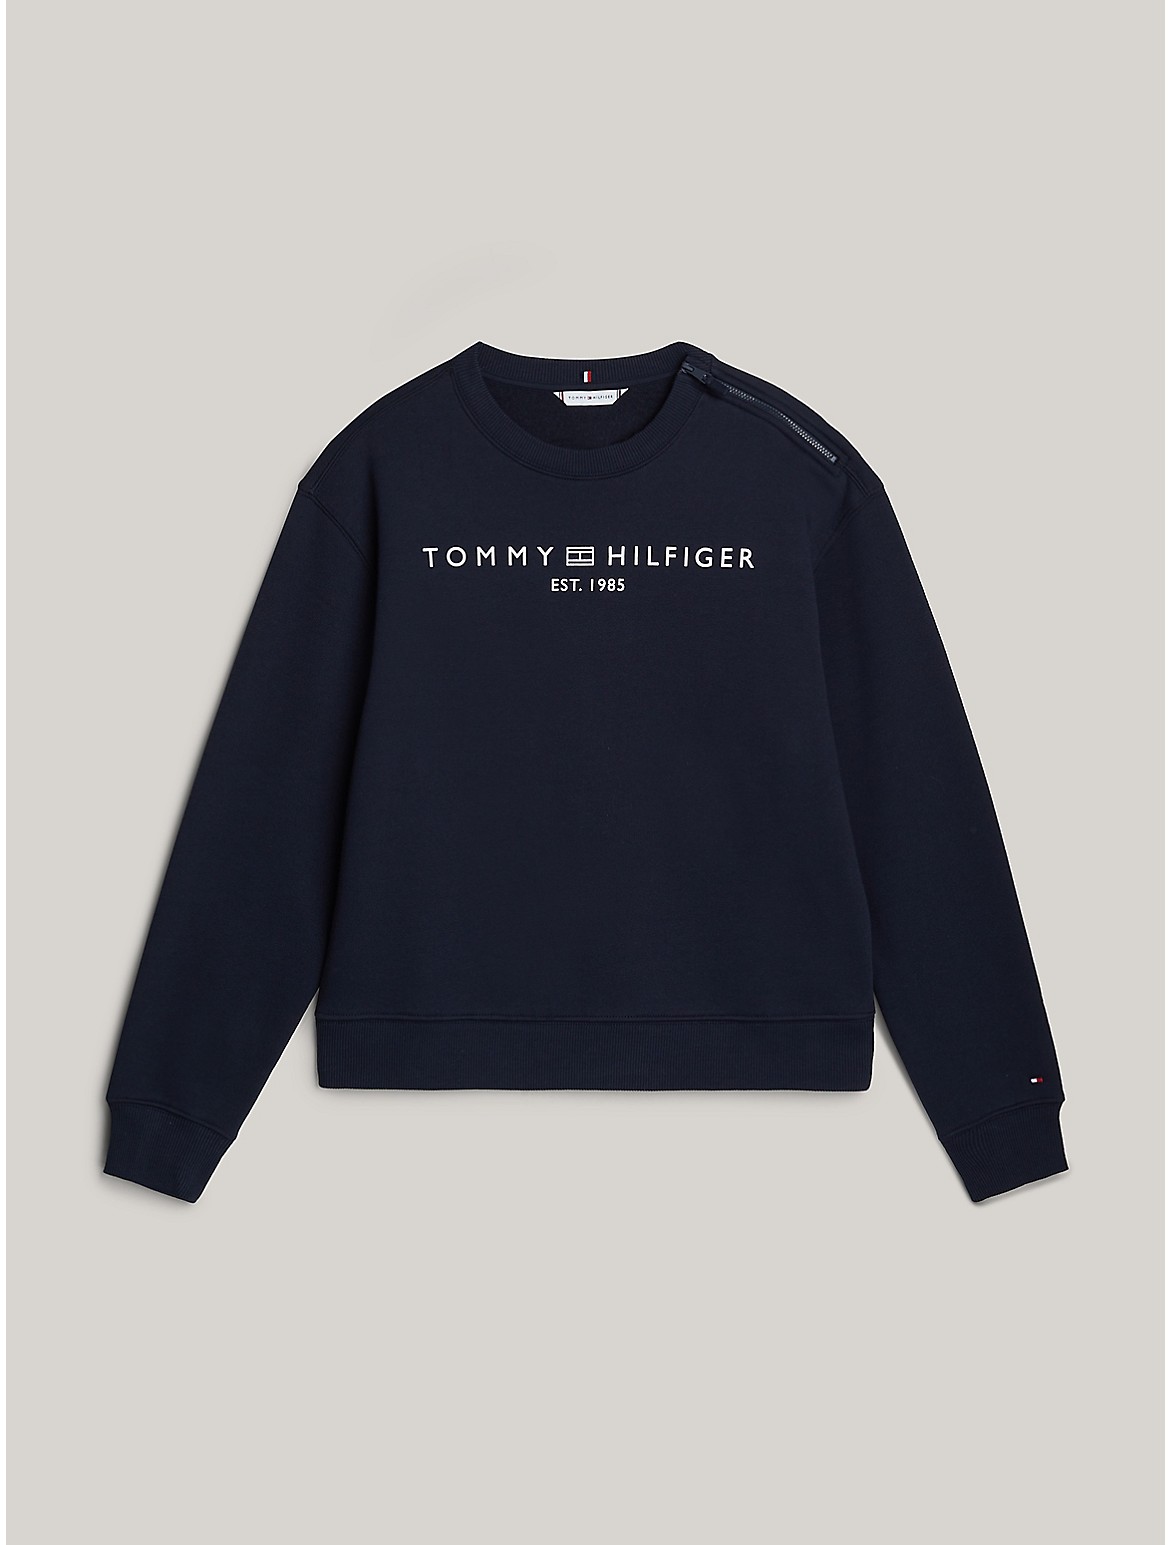 Tommy Hilfiger Women's Hilfiger Logo Sweatshirt